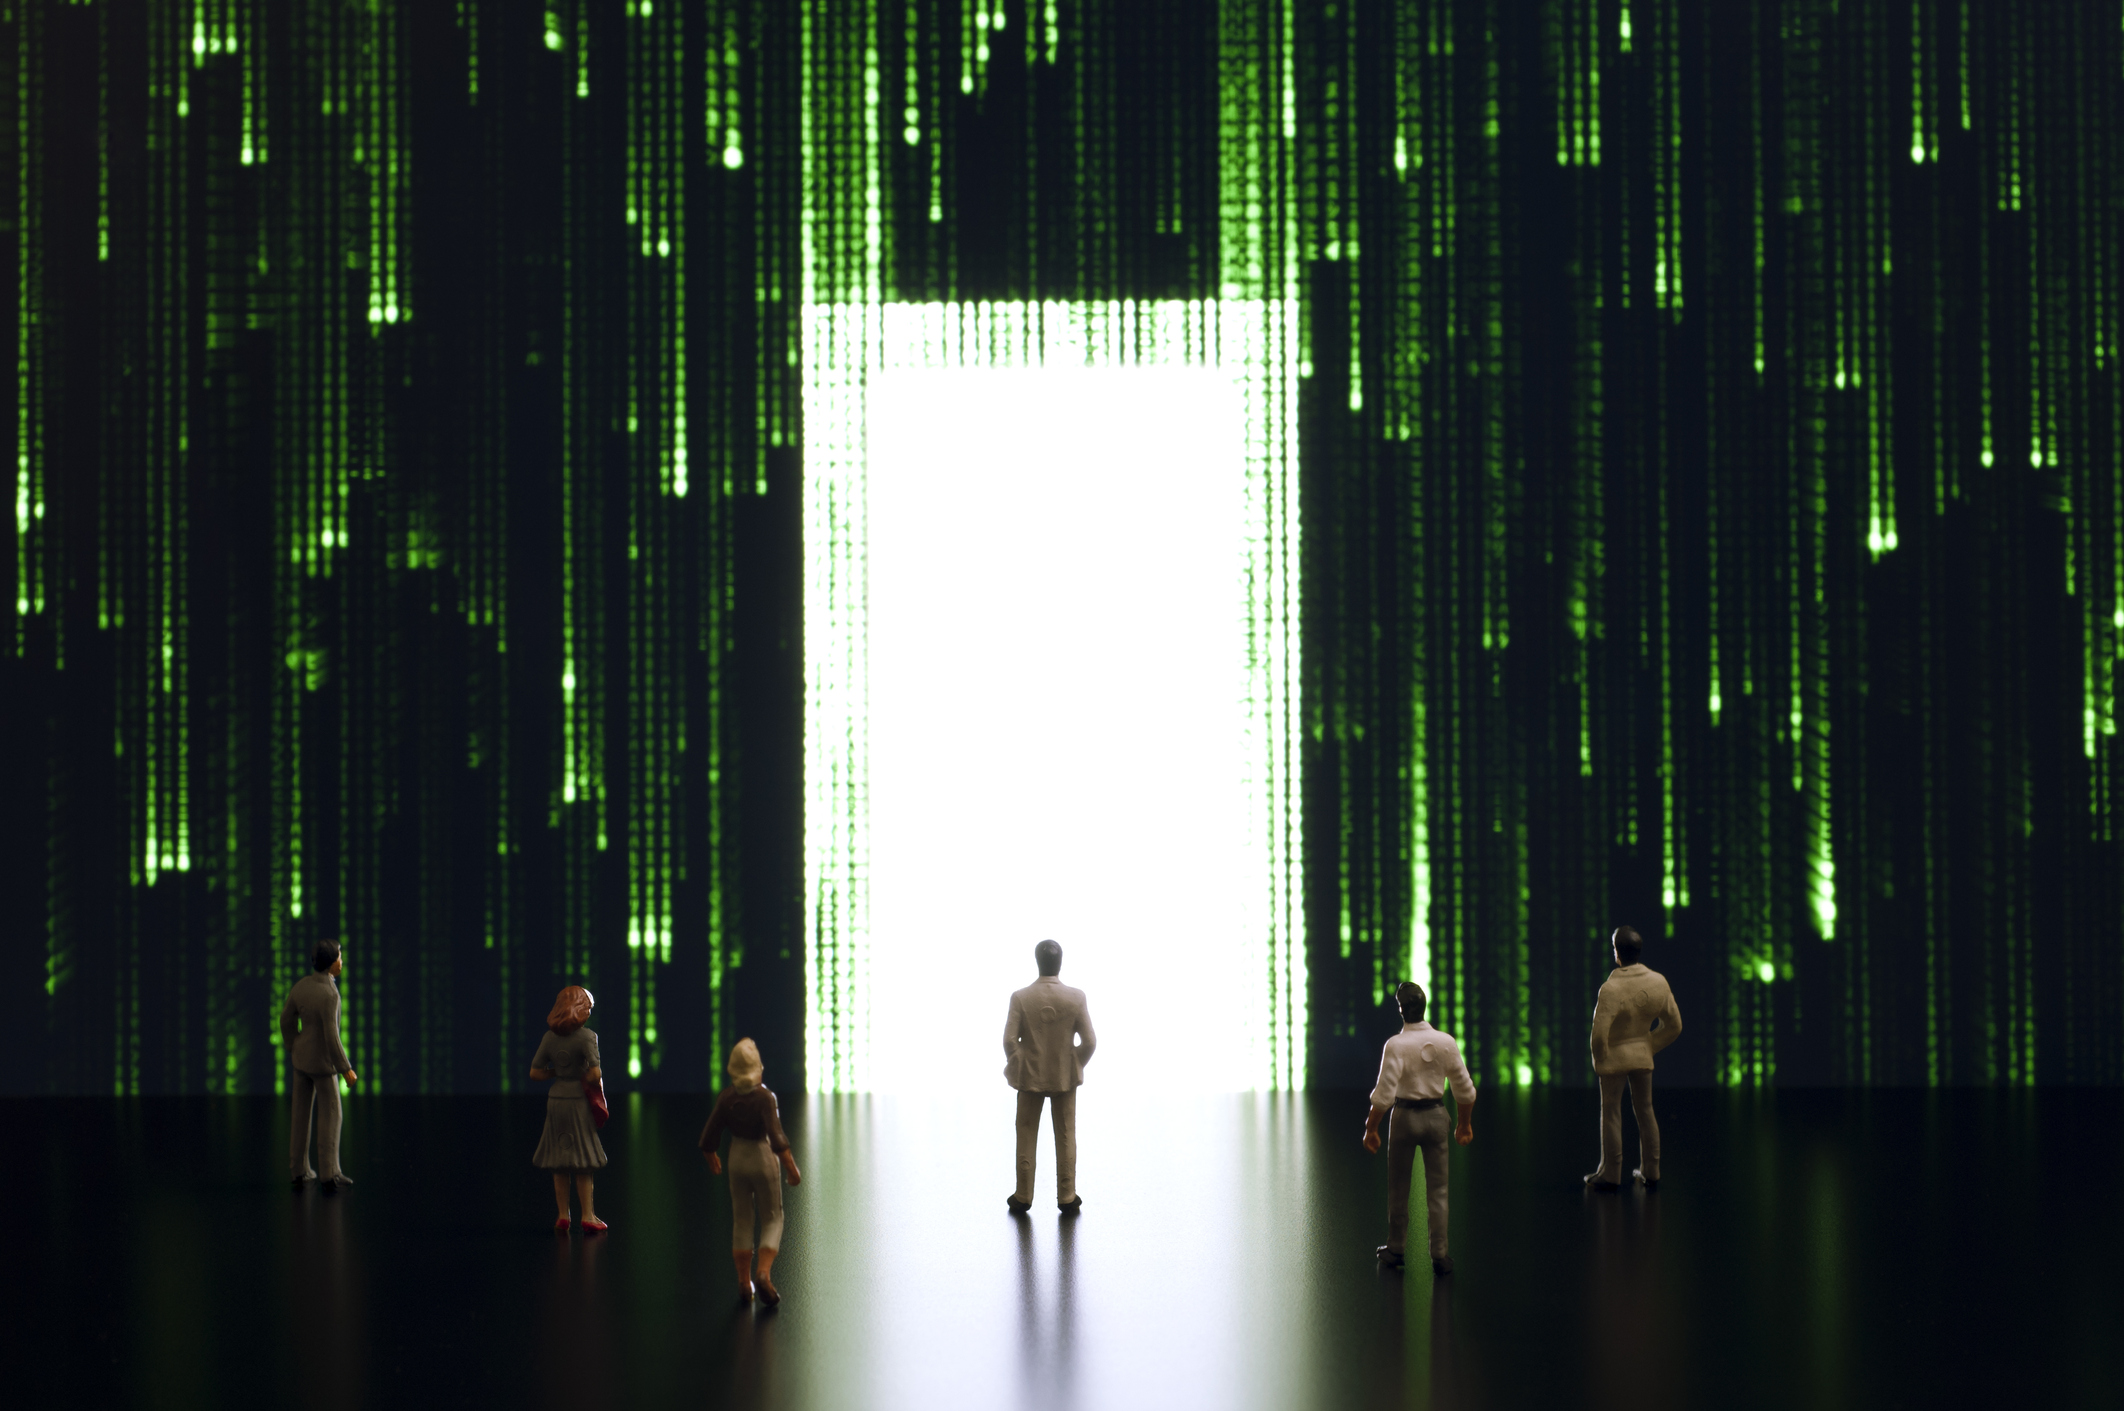 De Hollywoodfilm ‘The Matrix’ schetst dit soort omgeving waarbij mensen ondergedompeld zijn in een virtuele wereld terwijl ze als biologische batterijen fungeren voor de machines die de wereld hebben veroverd. 